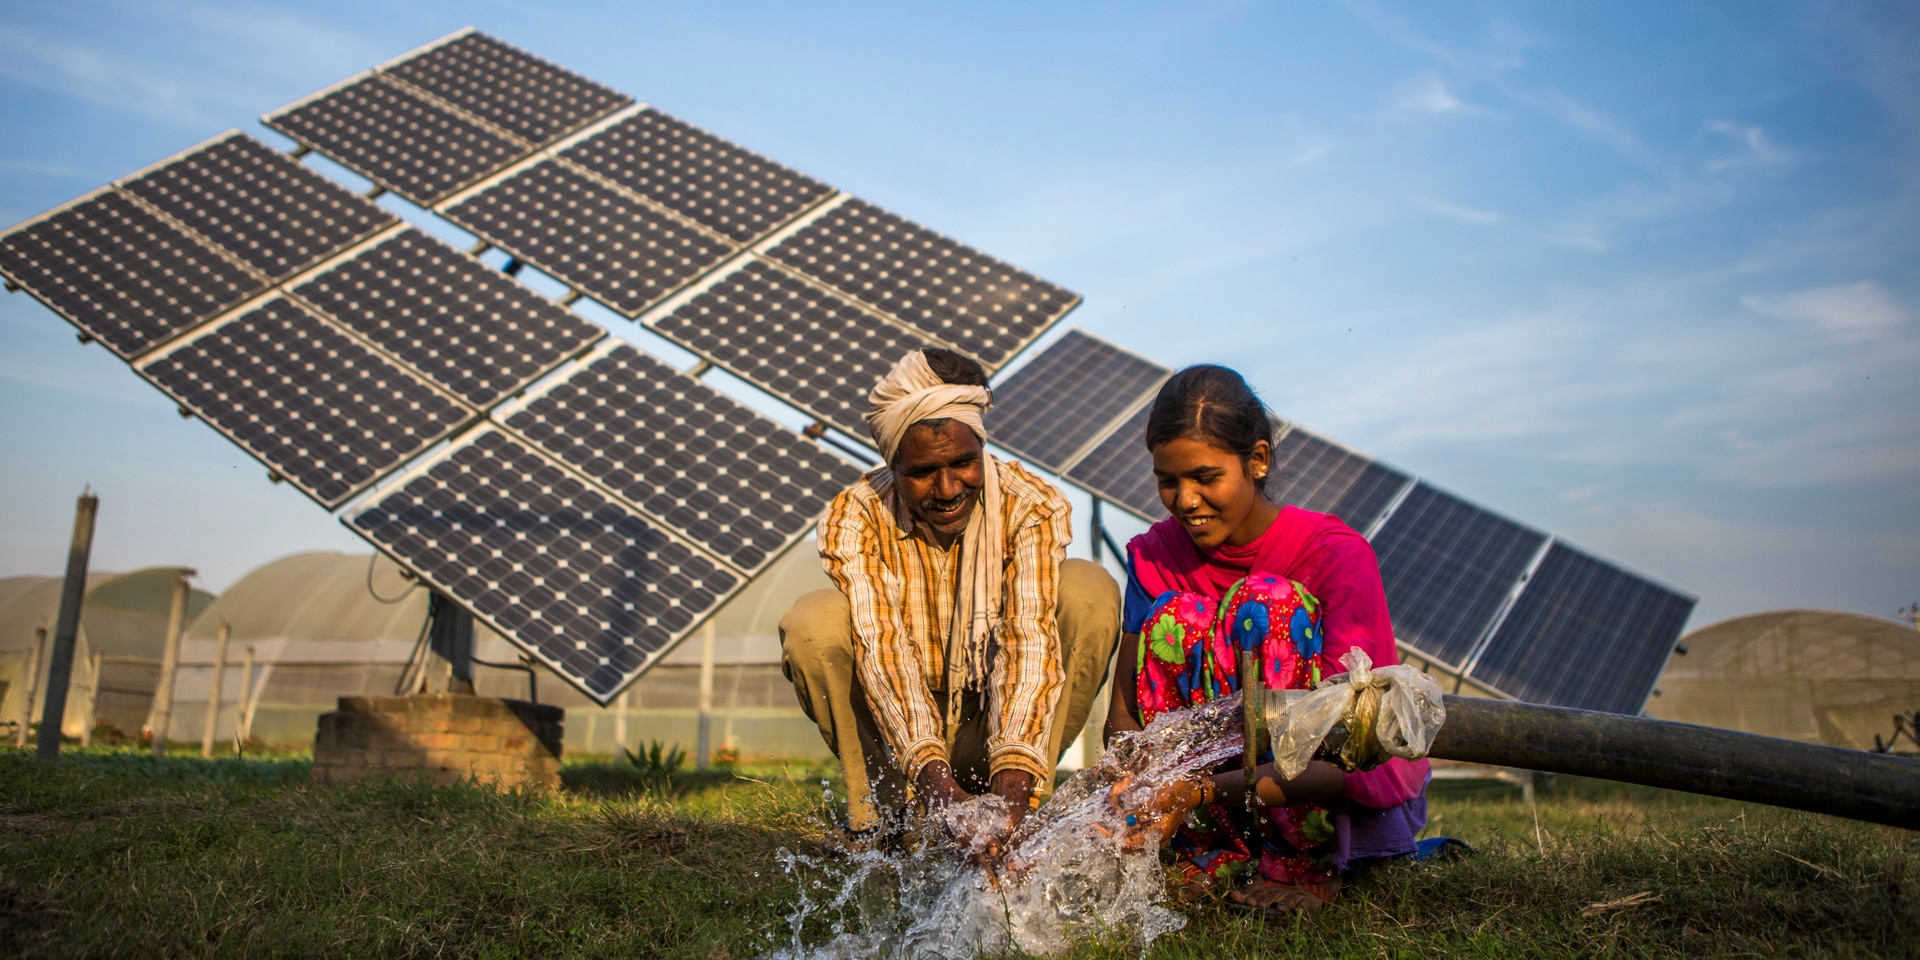 Un uomo e una donna nel Sud del mondo con un tubo dell’acqua e sullo sfondo pannelli solari.